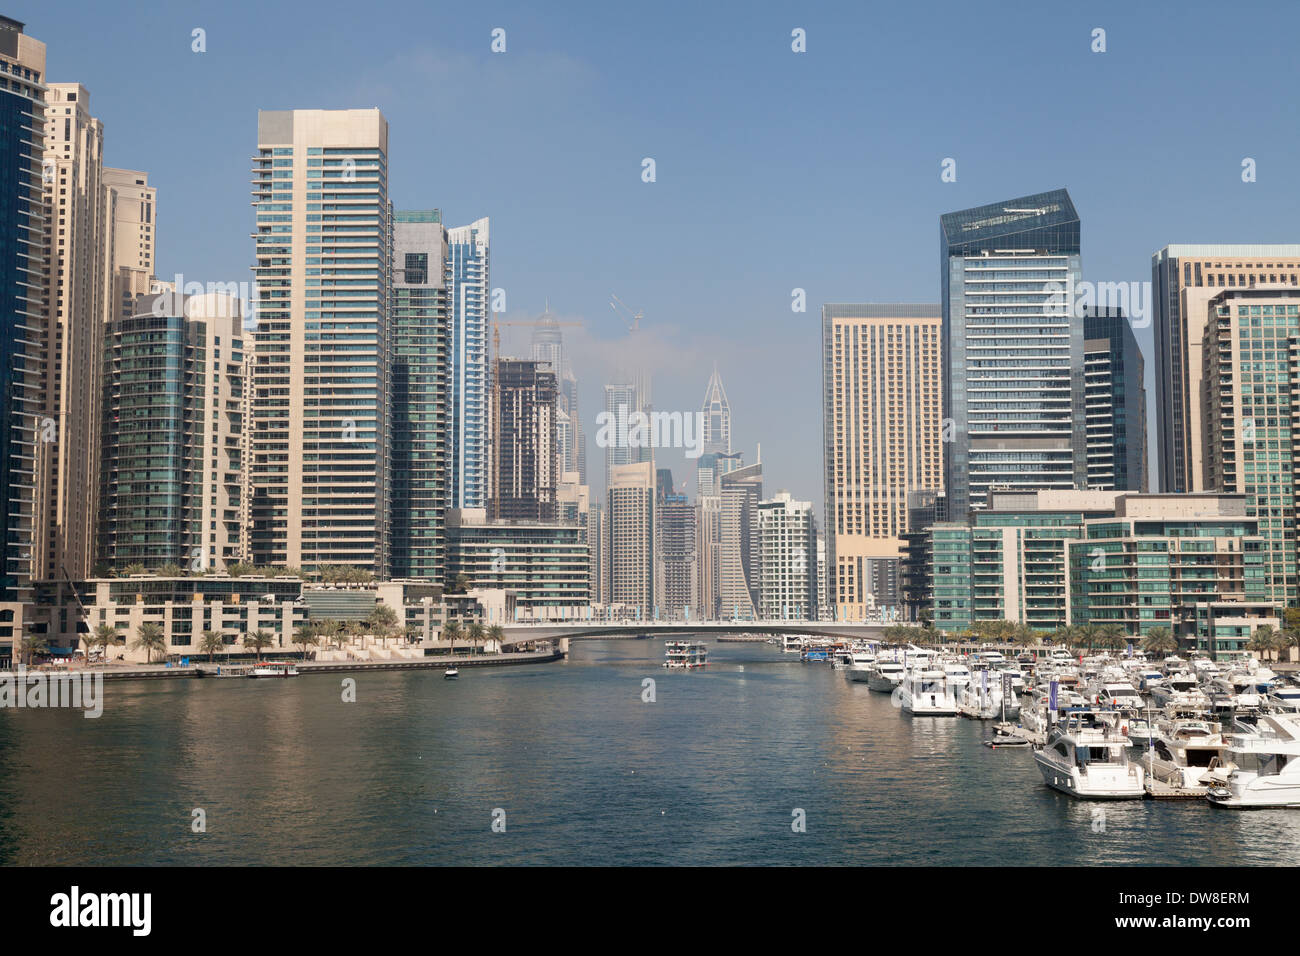 Dubai Marina, boats, modern skyscrapers and Dubai skyline, Dubai, UAE, United Arab Emirates, Middle East Stock Photo